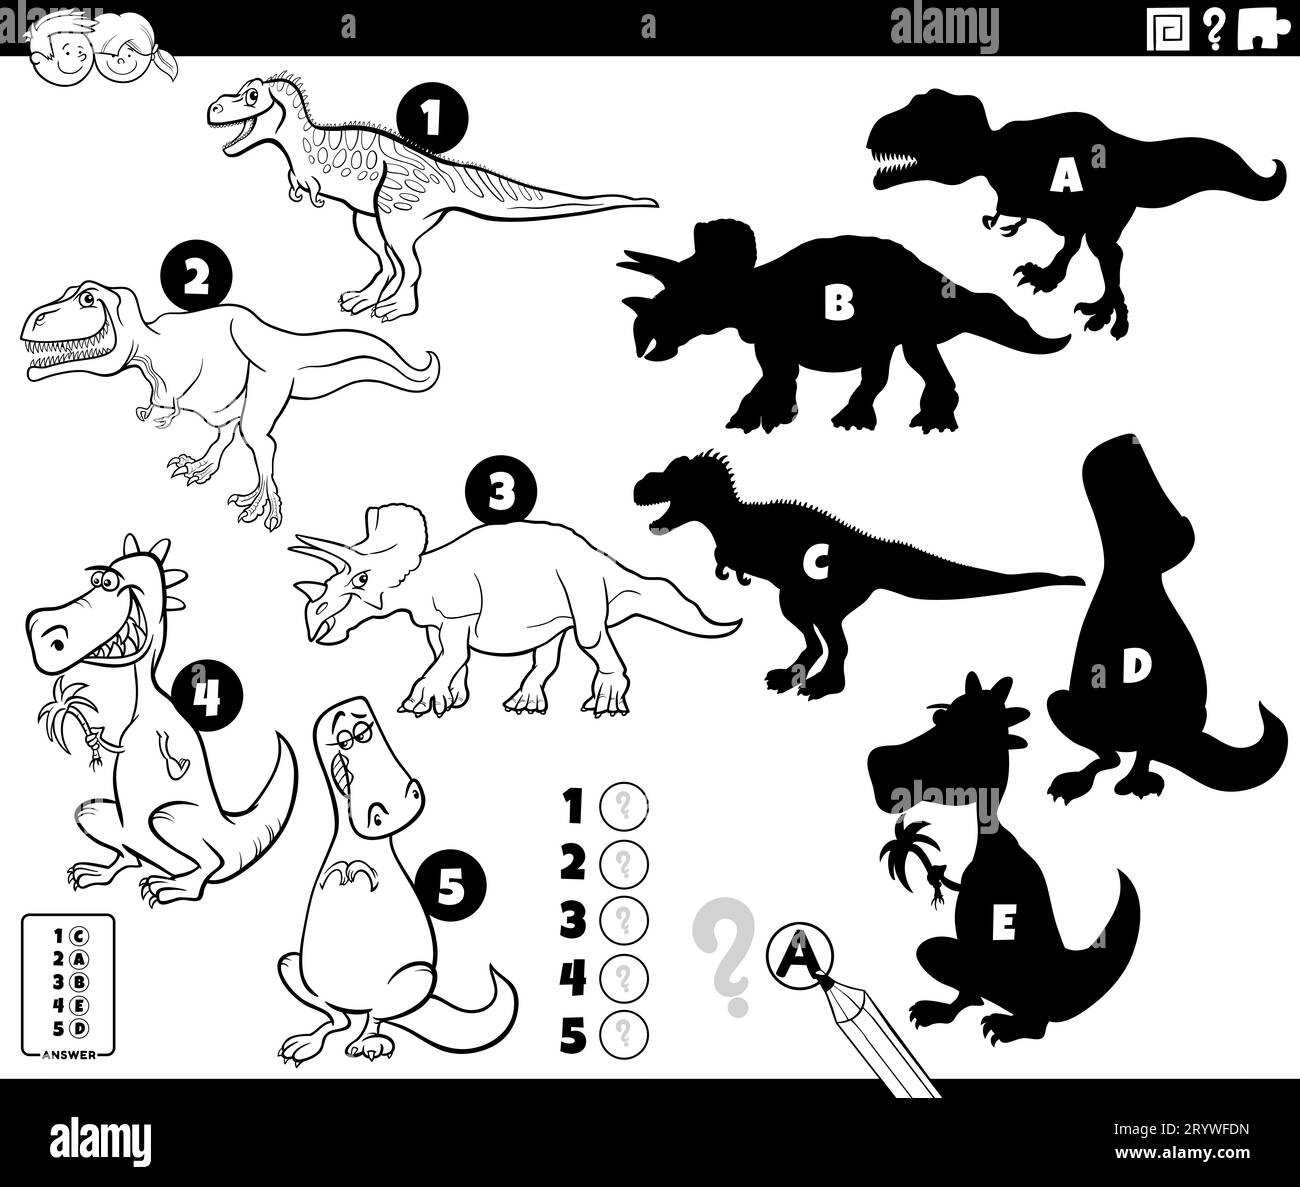 Schwarz-weiß-Cartoon, in dem gezeigt wird, wie man die richtigen Schatten findet, um das Bildspiel für Kinder mit lustigen prähistorischen Dinosaurier-Charakteristika zu erlernen Stockfoto